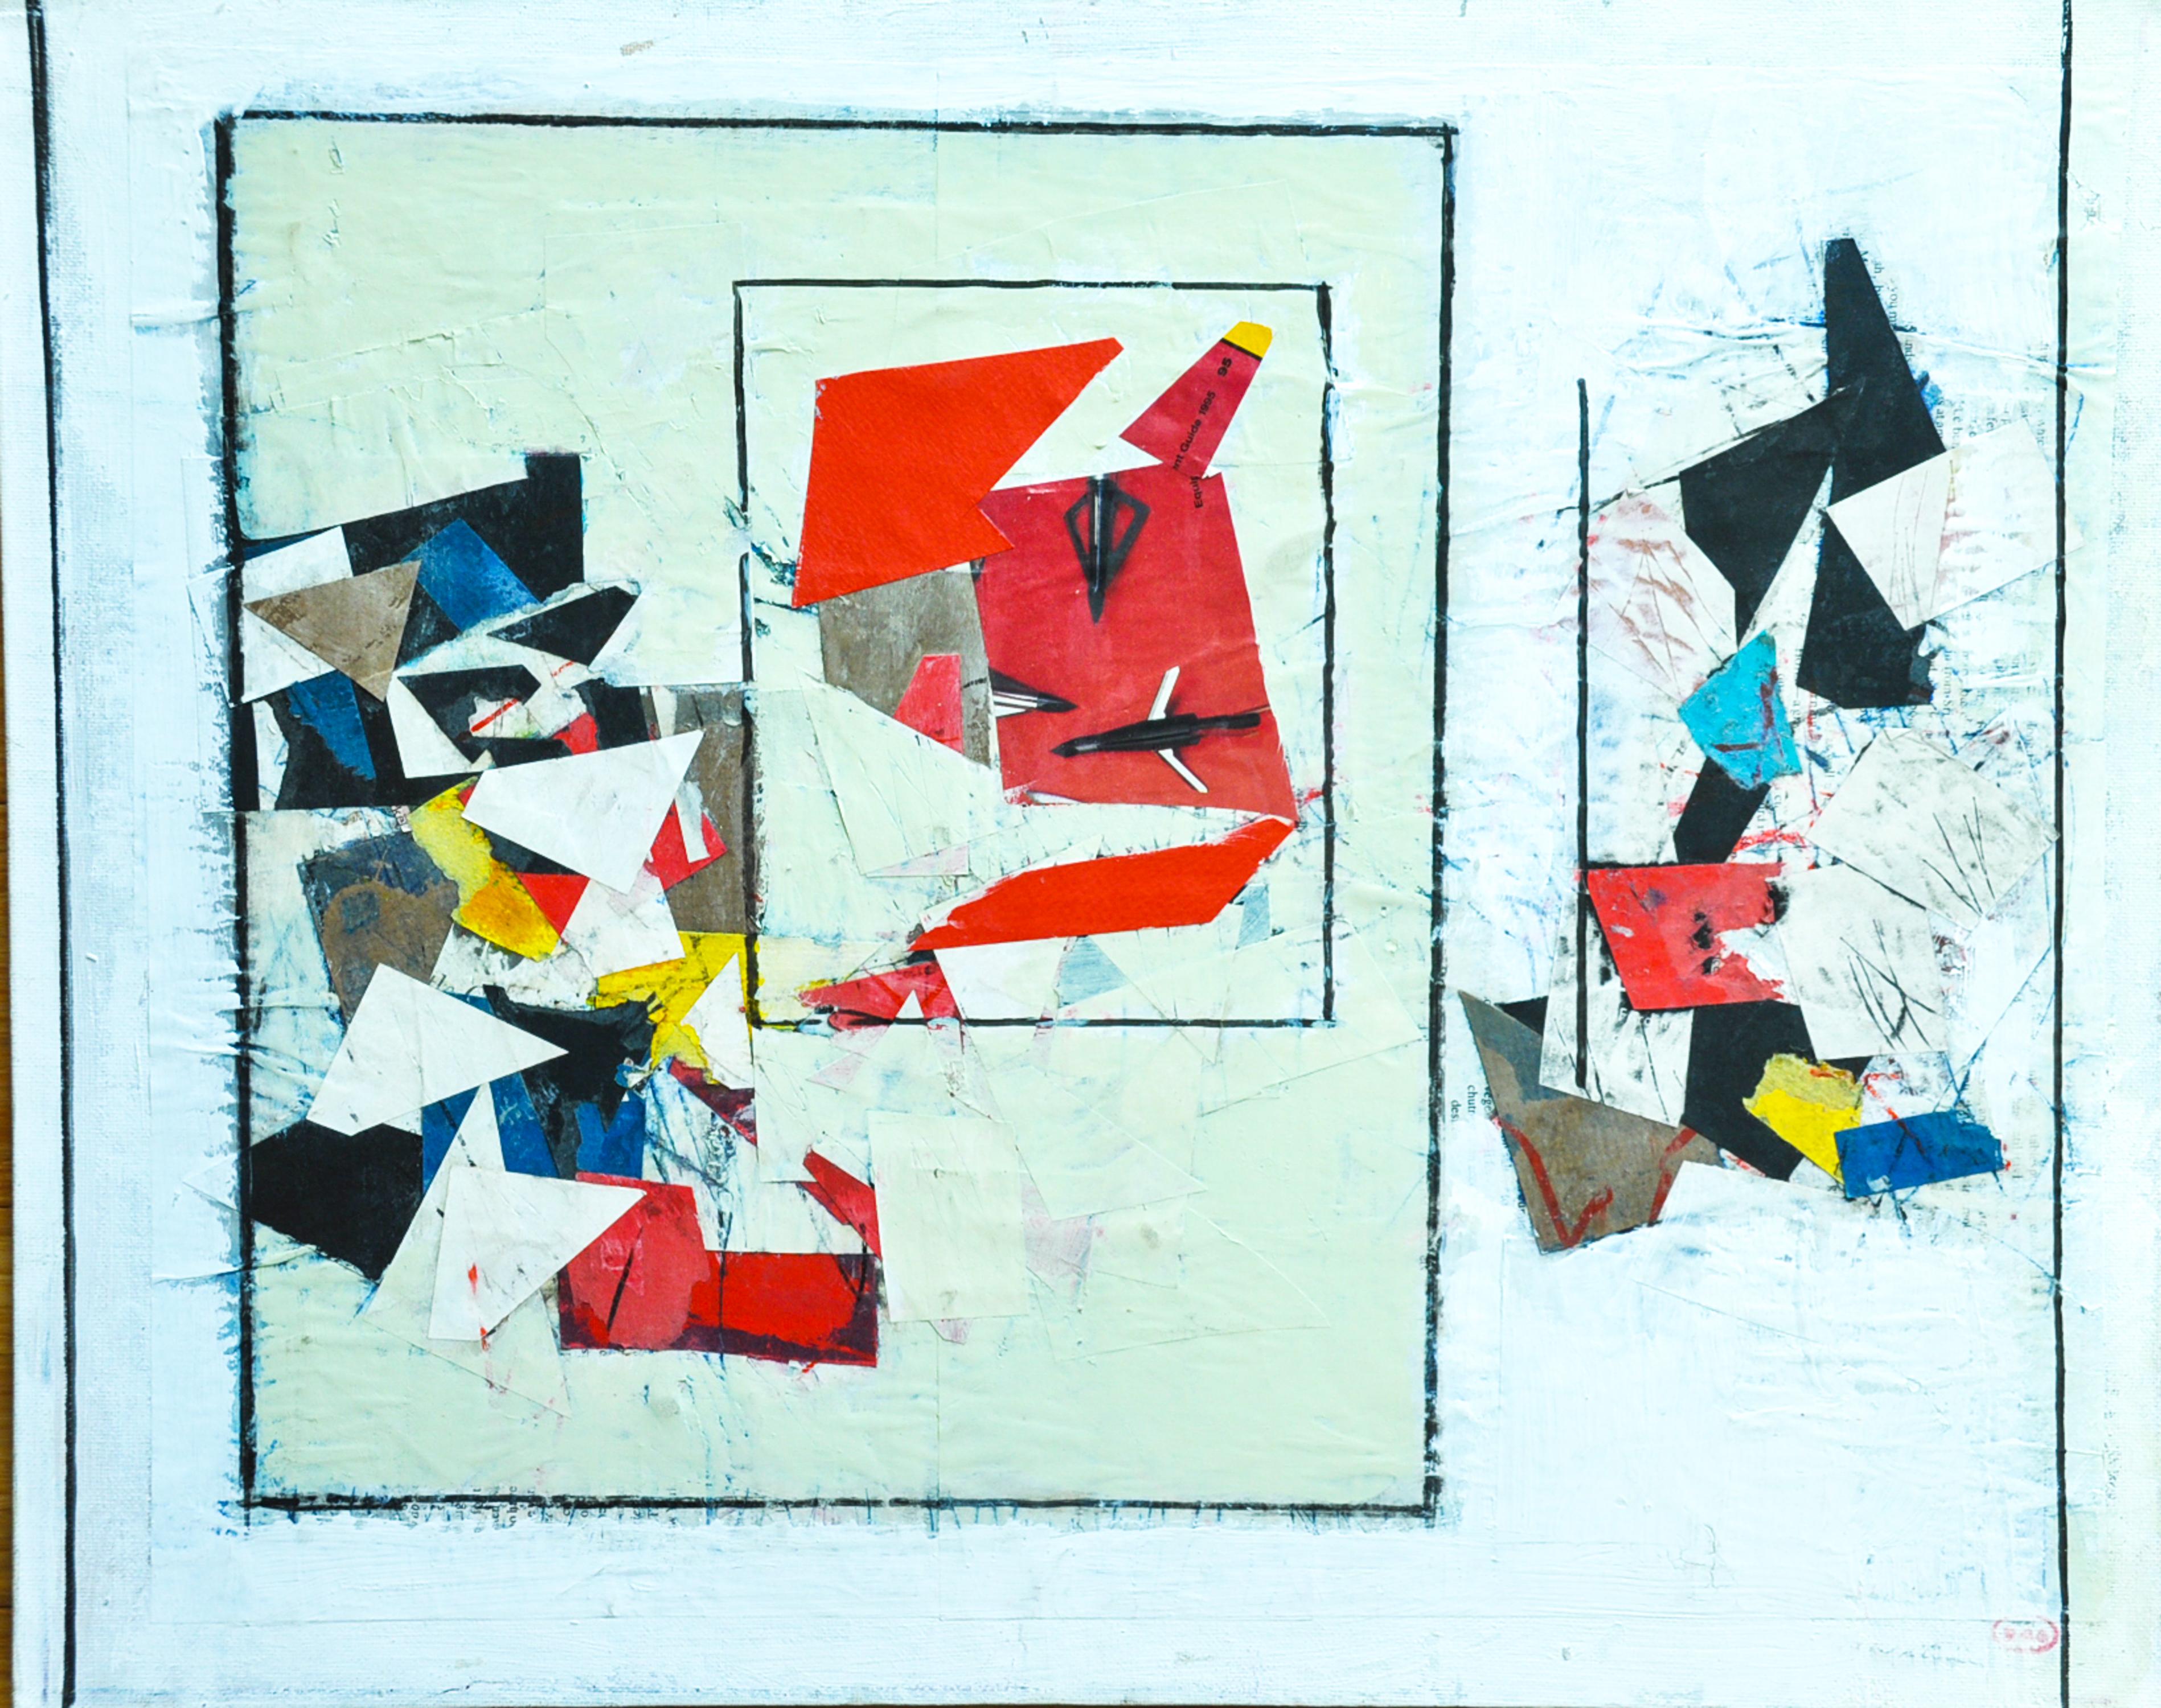 "Untitled Collage" des amerikanischen Künstlers Ronald Ahlstrom (1922 - 2012) ist eine abstrakte Collage aus verschiedenen Medien auf Leinwand, die irgendwann in den 70er Jahren entstand. Es handelt sich um ein geometrisches Werk mit mehreren